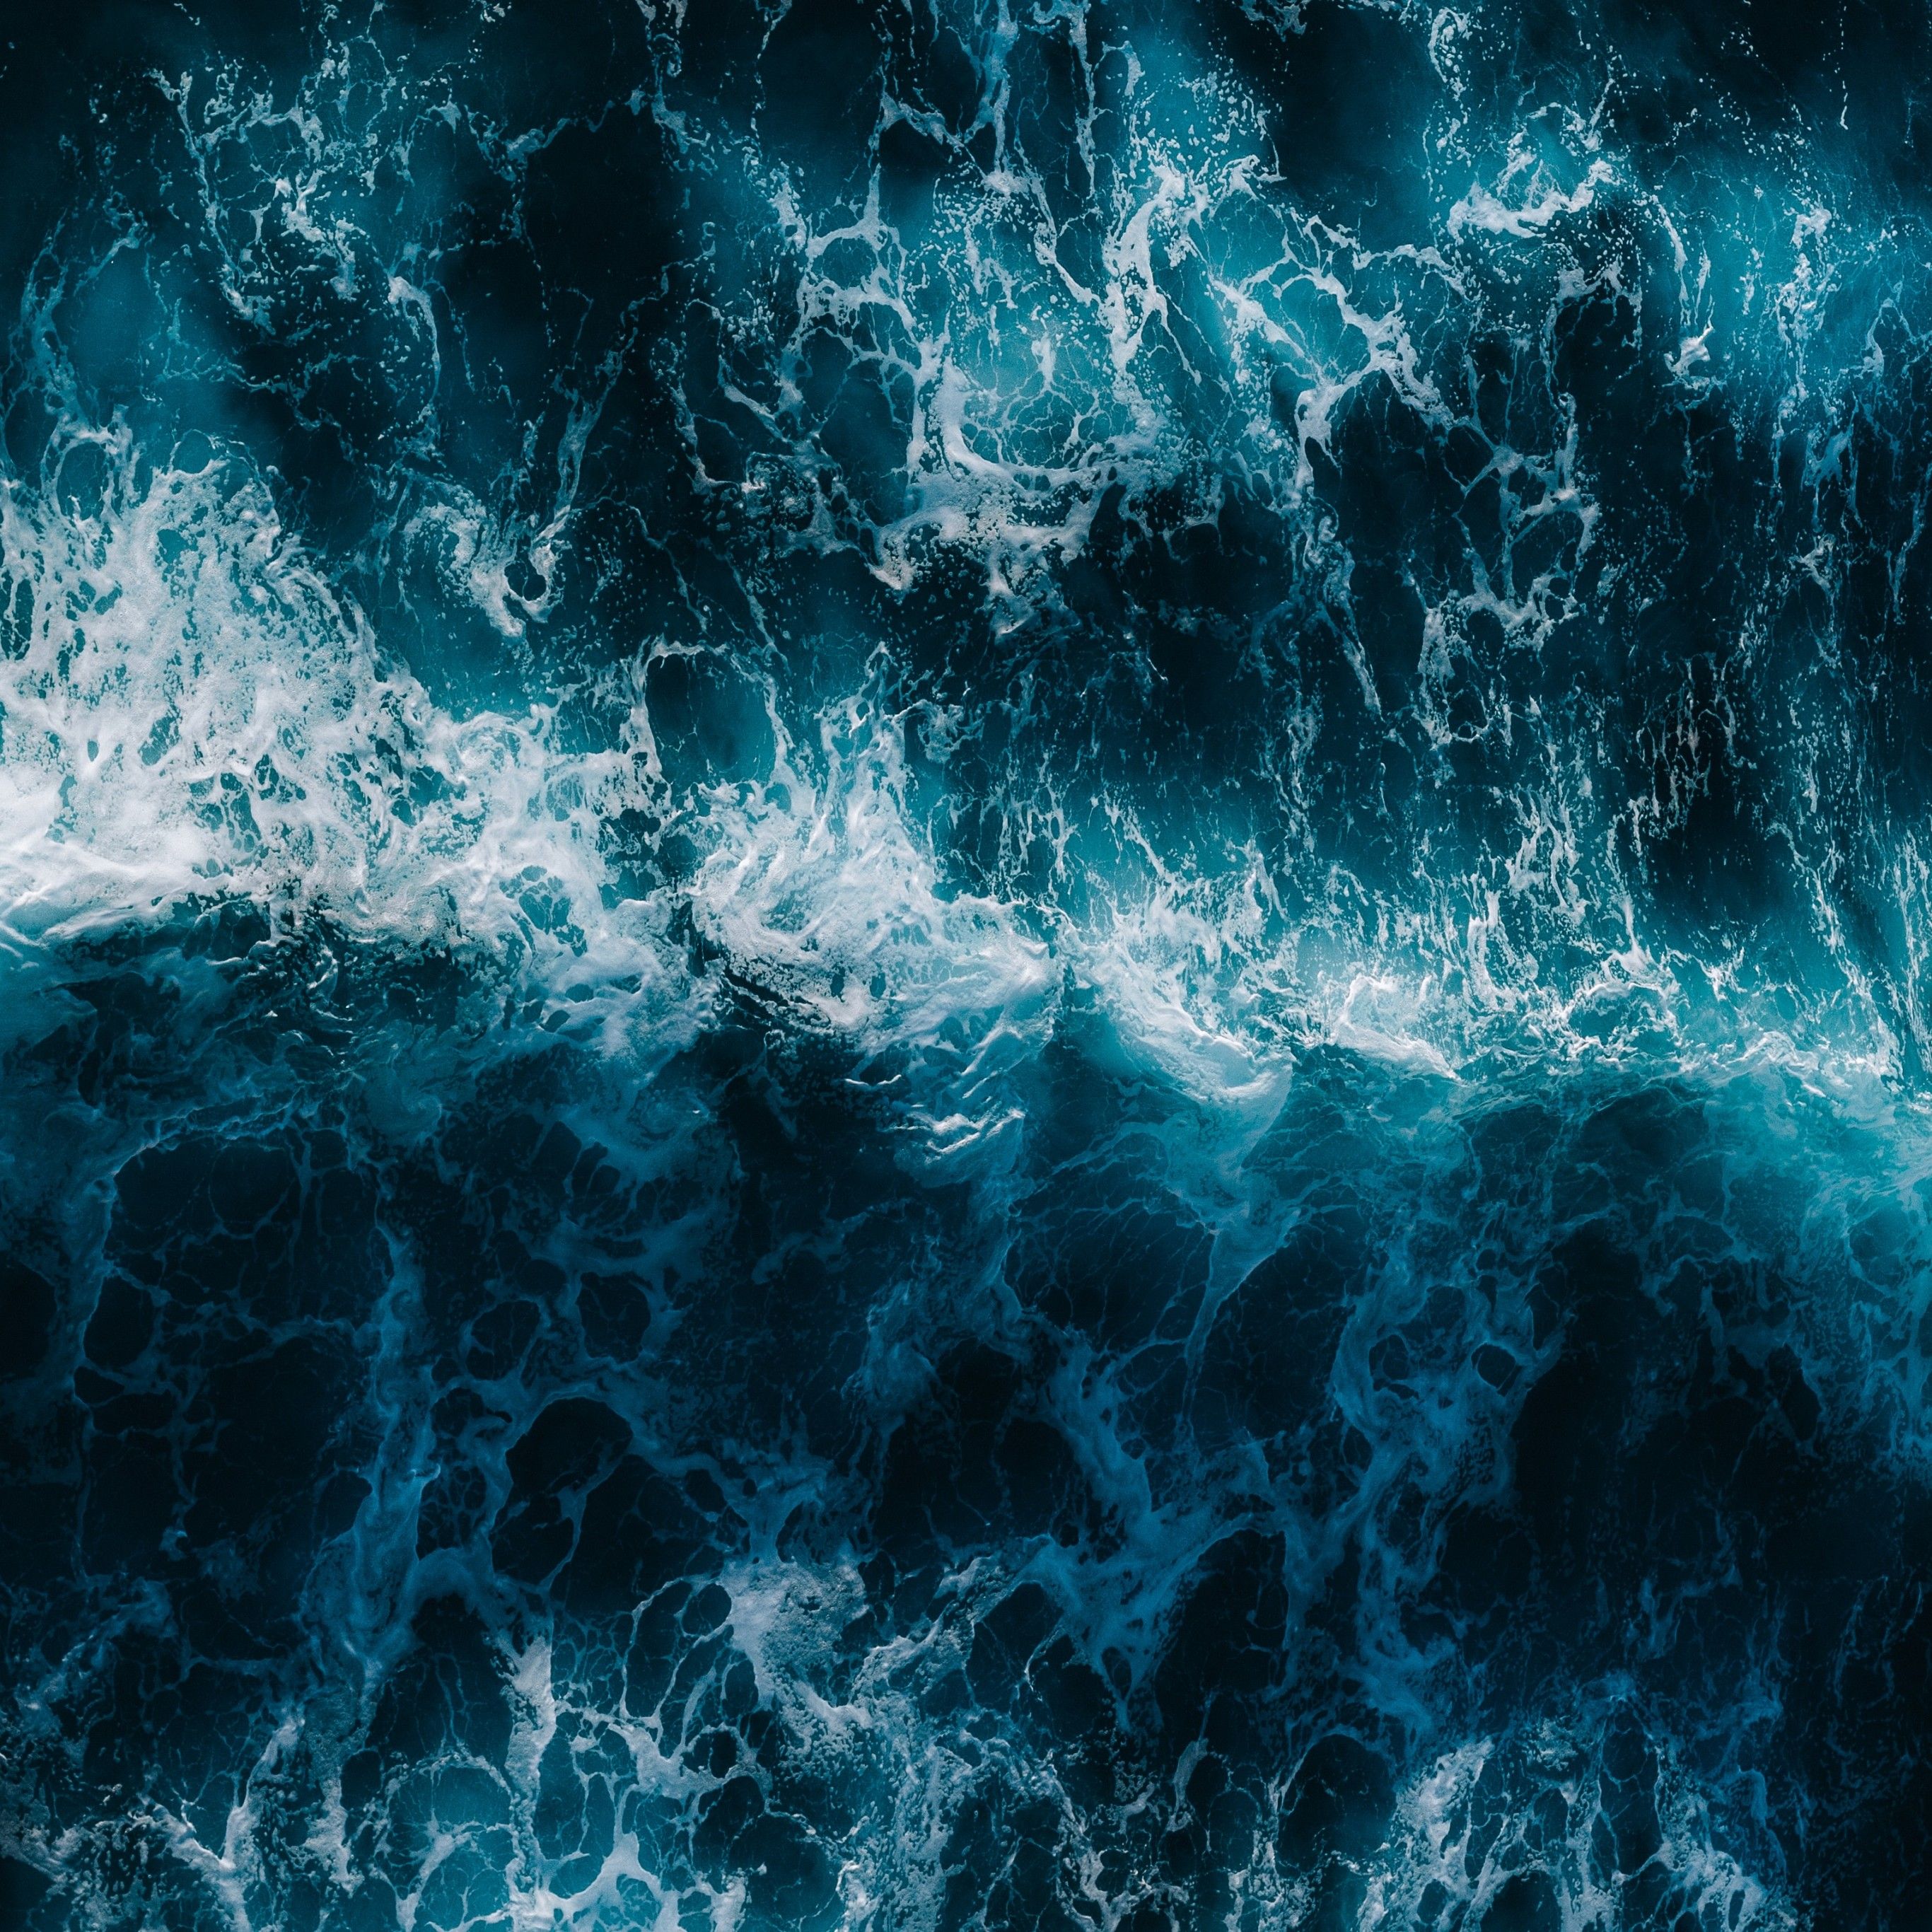 Ocean Waves 4K Wallpaper, Aerial view, Blue Water, Pattern, Sea Waves, 5K, Nature